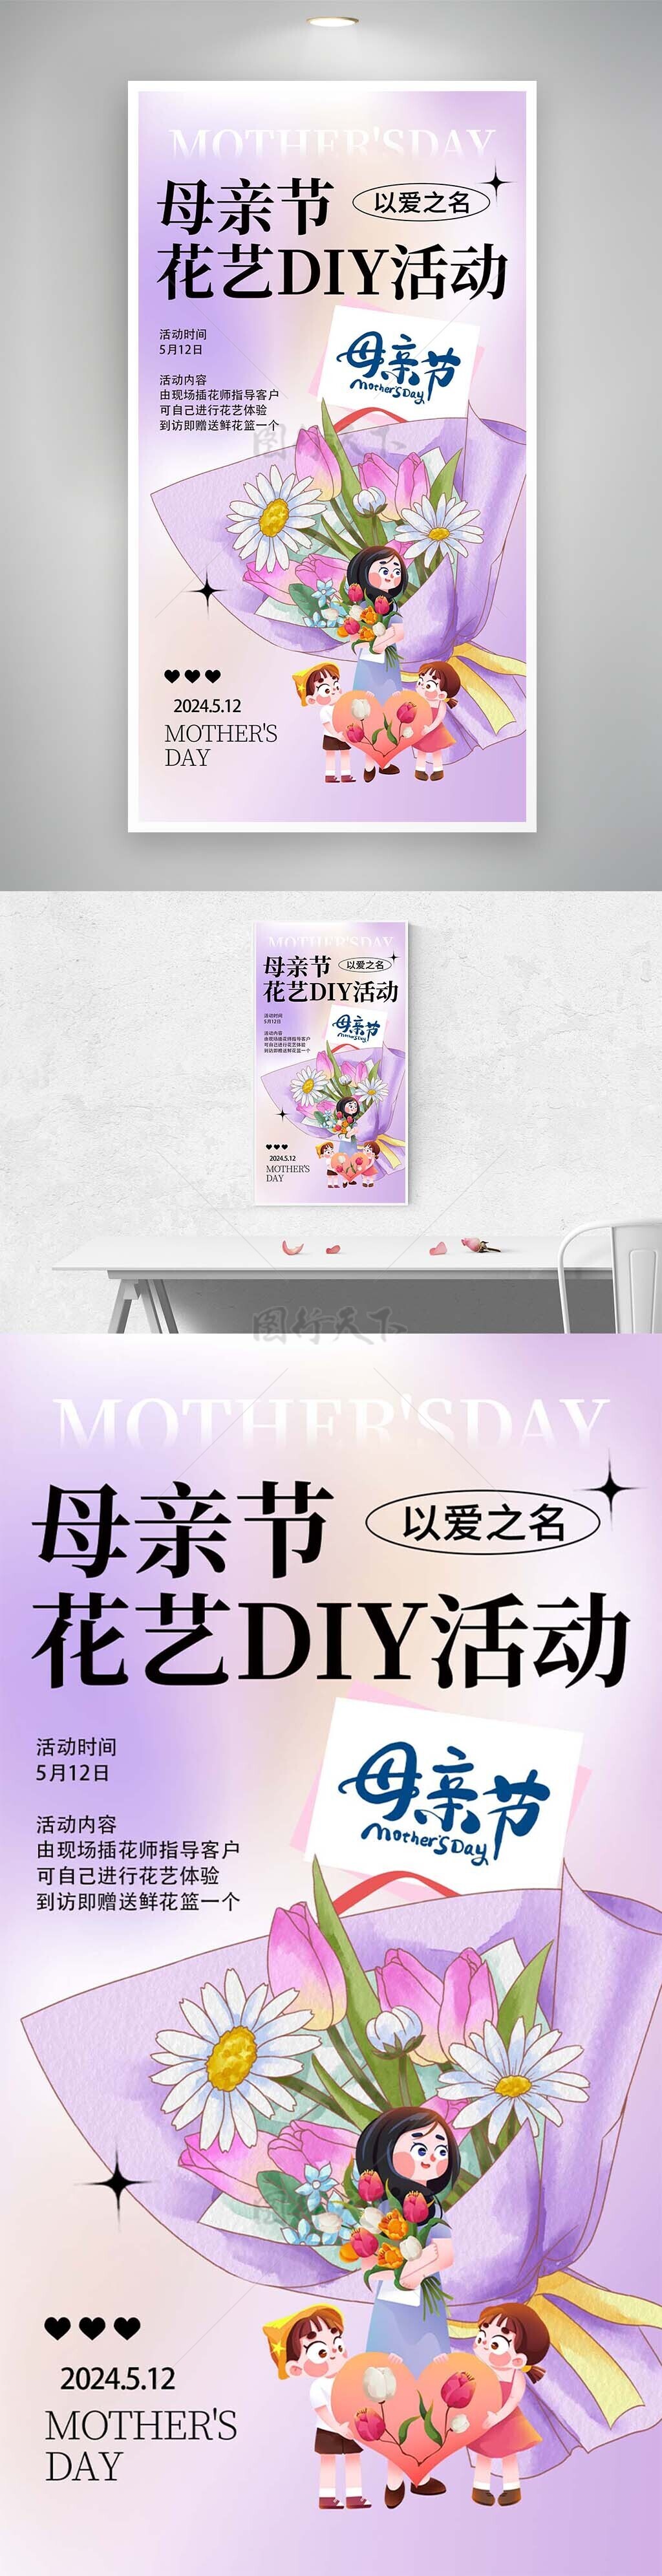 母亲节花艺DIY活动报名推广海报设计